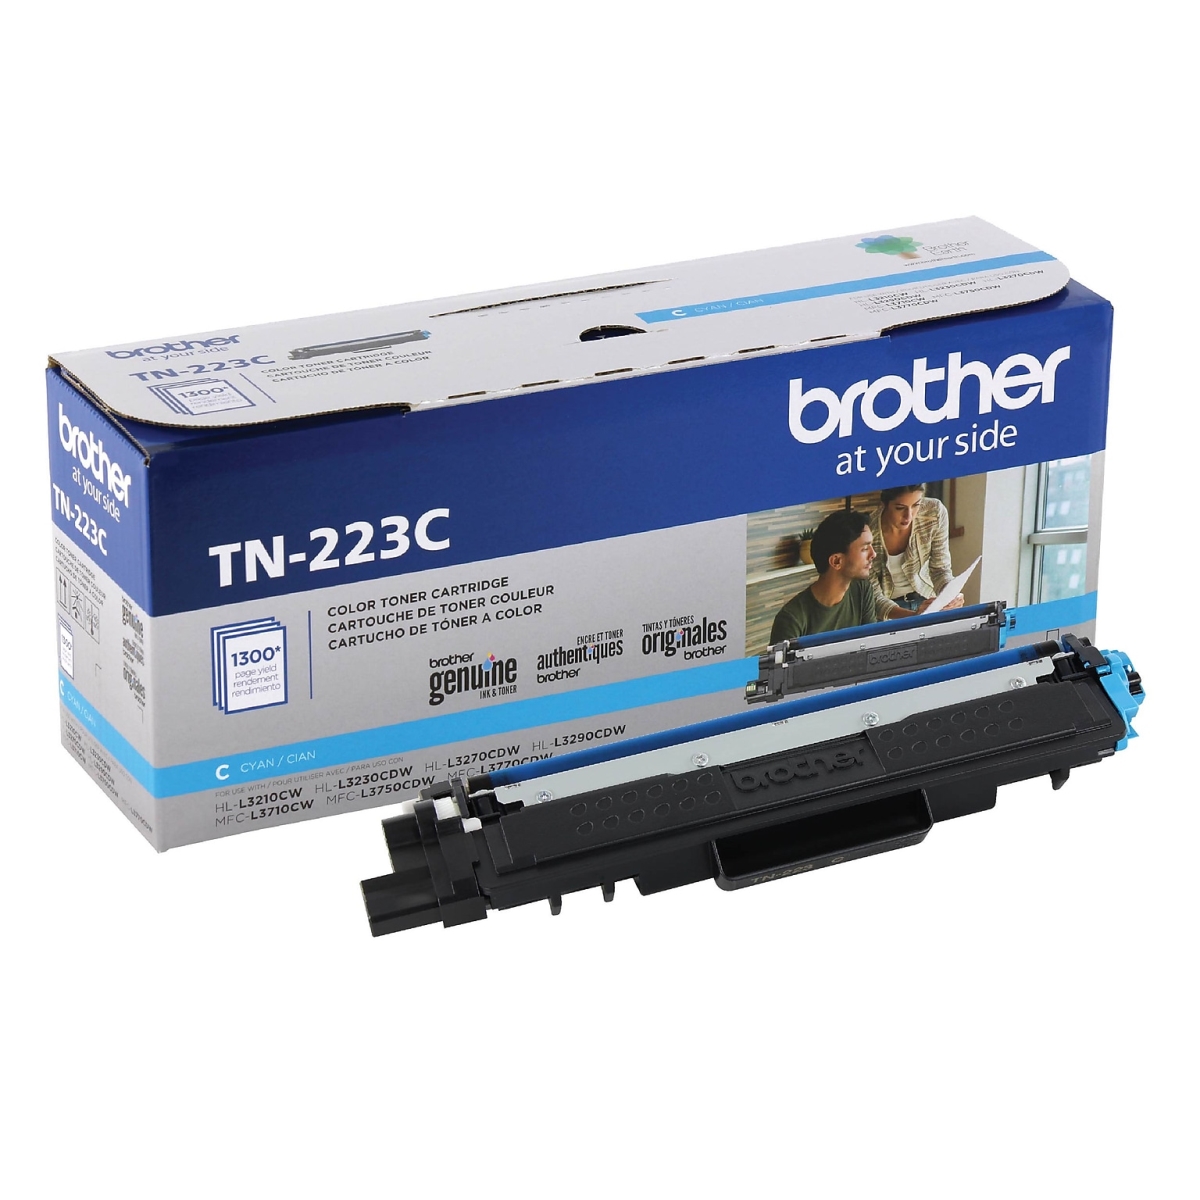 HVB-TN223C New Compatible Brother TN-223C Cyan Toner Cartridge for MFC-L3710CW - MFC-L3750CDW & MFC-L3770CDW - 1.8K Yield -  Hi-Value Brand